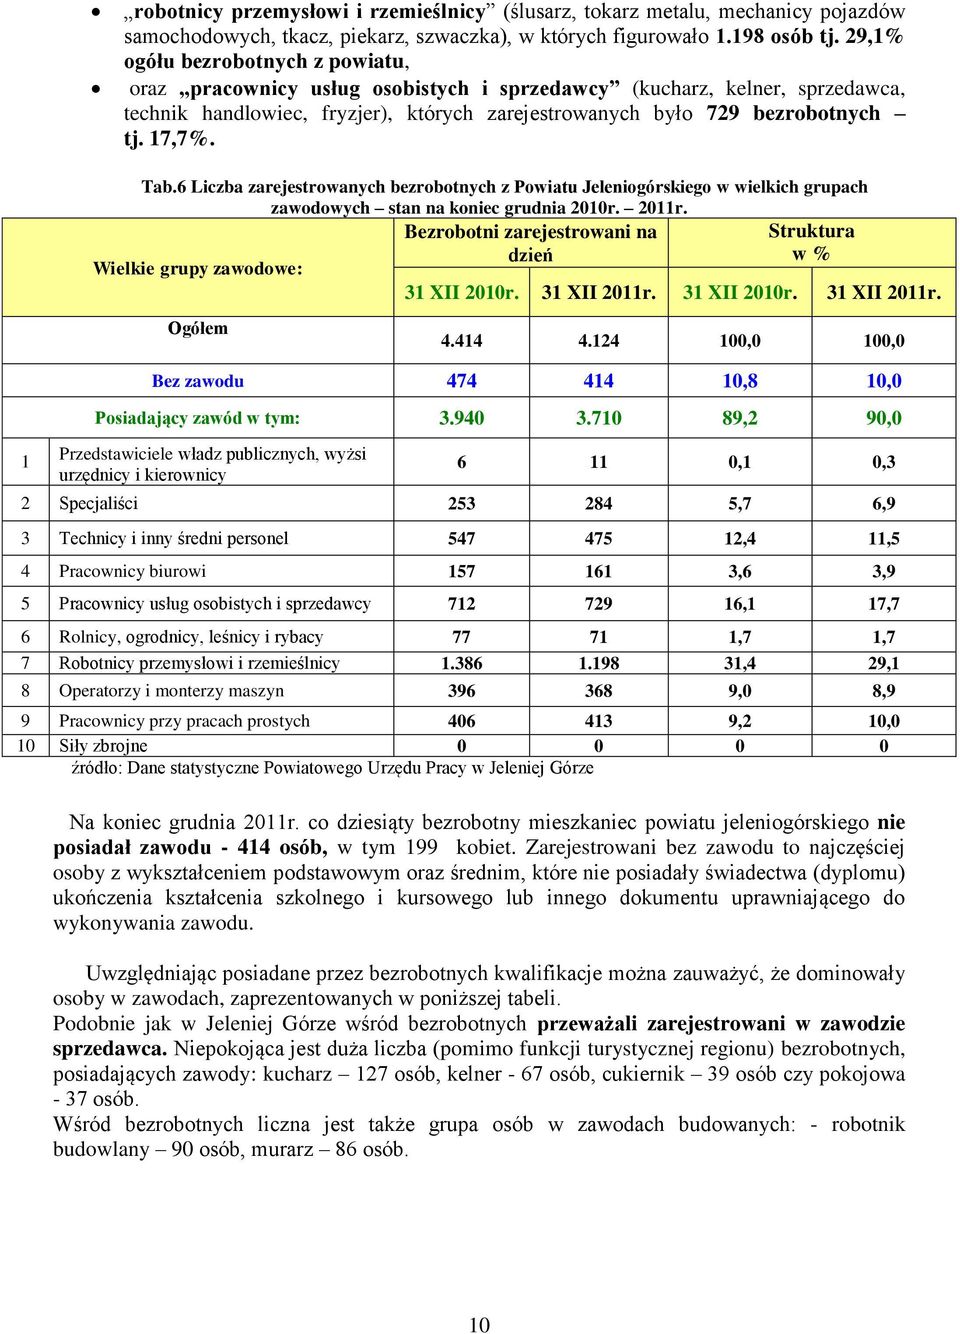 1 Tab.6 Liczba zarejestrowanych bezrobotnych z Powiatu Jeleniogórskiego w wielkich grupach zawodowych stan na koniec grudnia 2010r. 2011r.